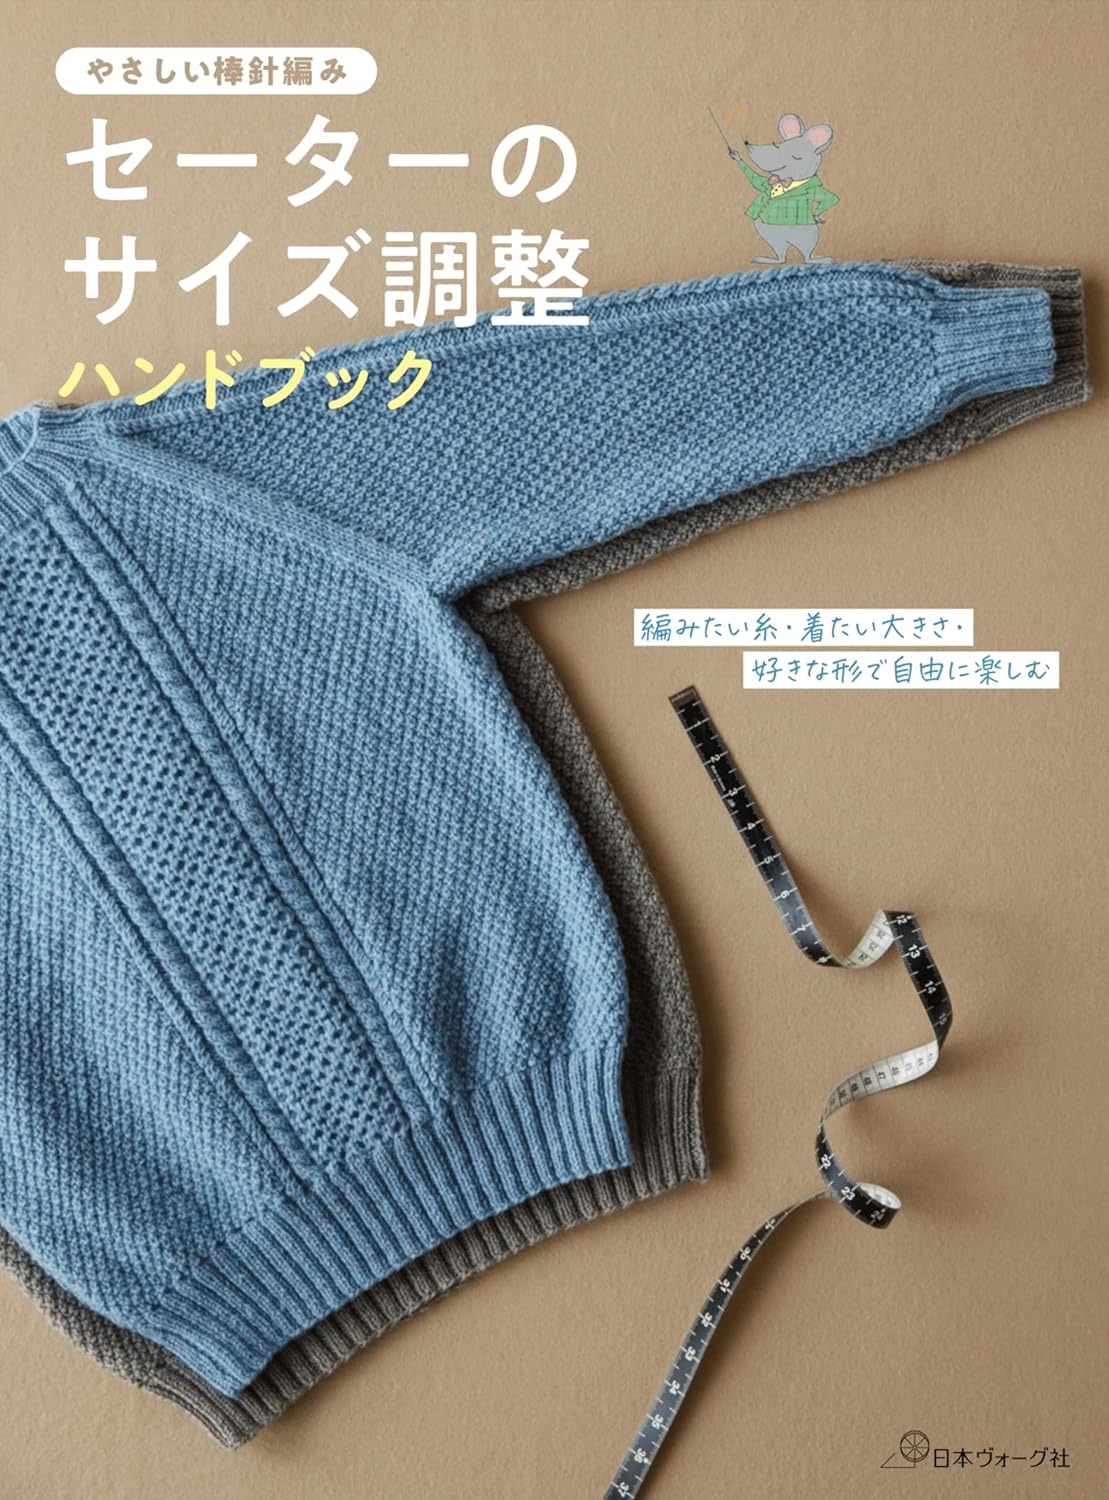 🌲毛線森林🌷日文編織書 - セーターのサイズ調整ハンドブック